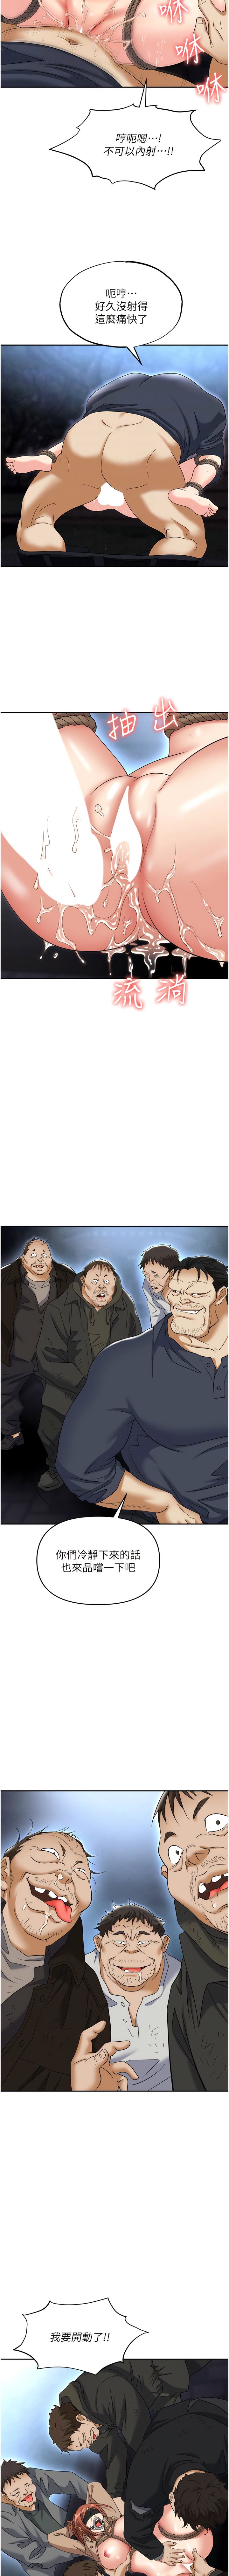 韩国污漫画 職場陷阱 第59话 被插到狂流水的性奴 7